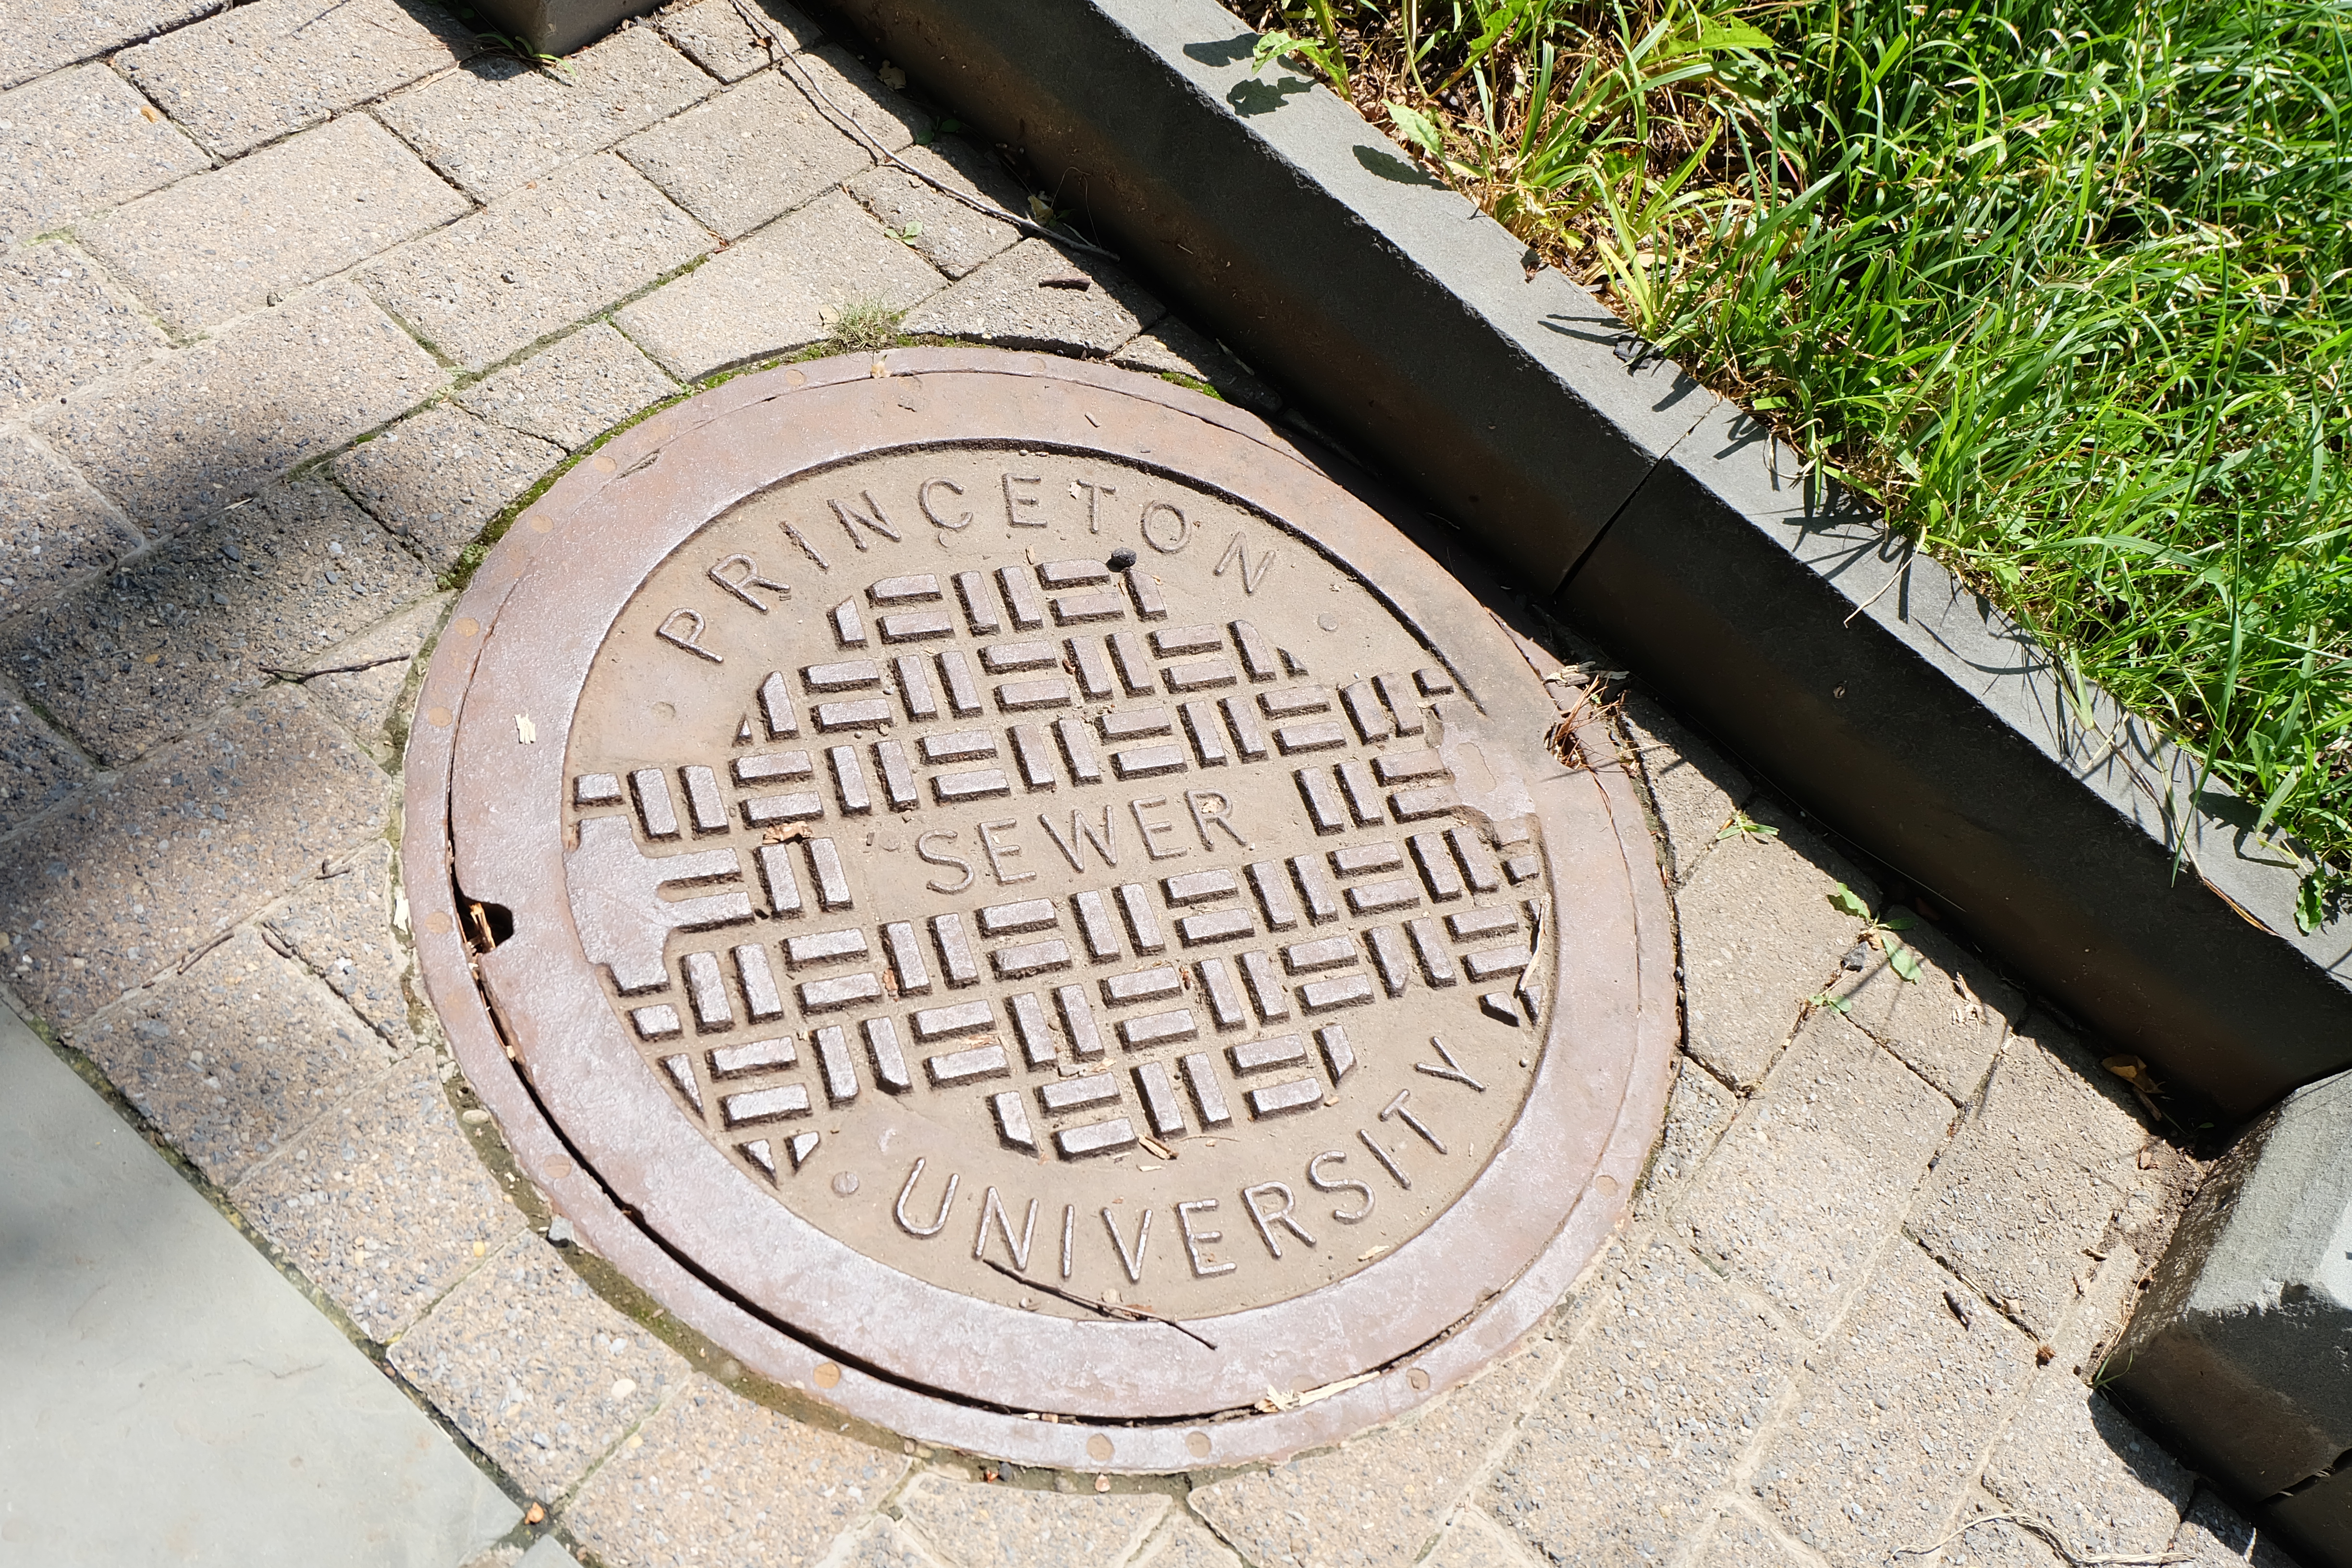 Princeton sewer university